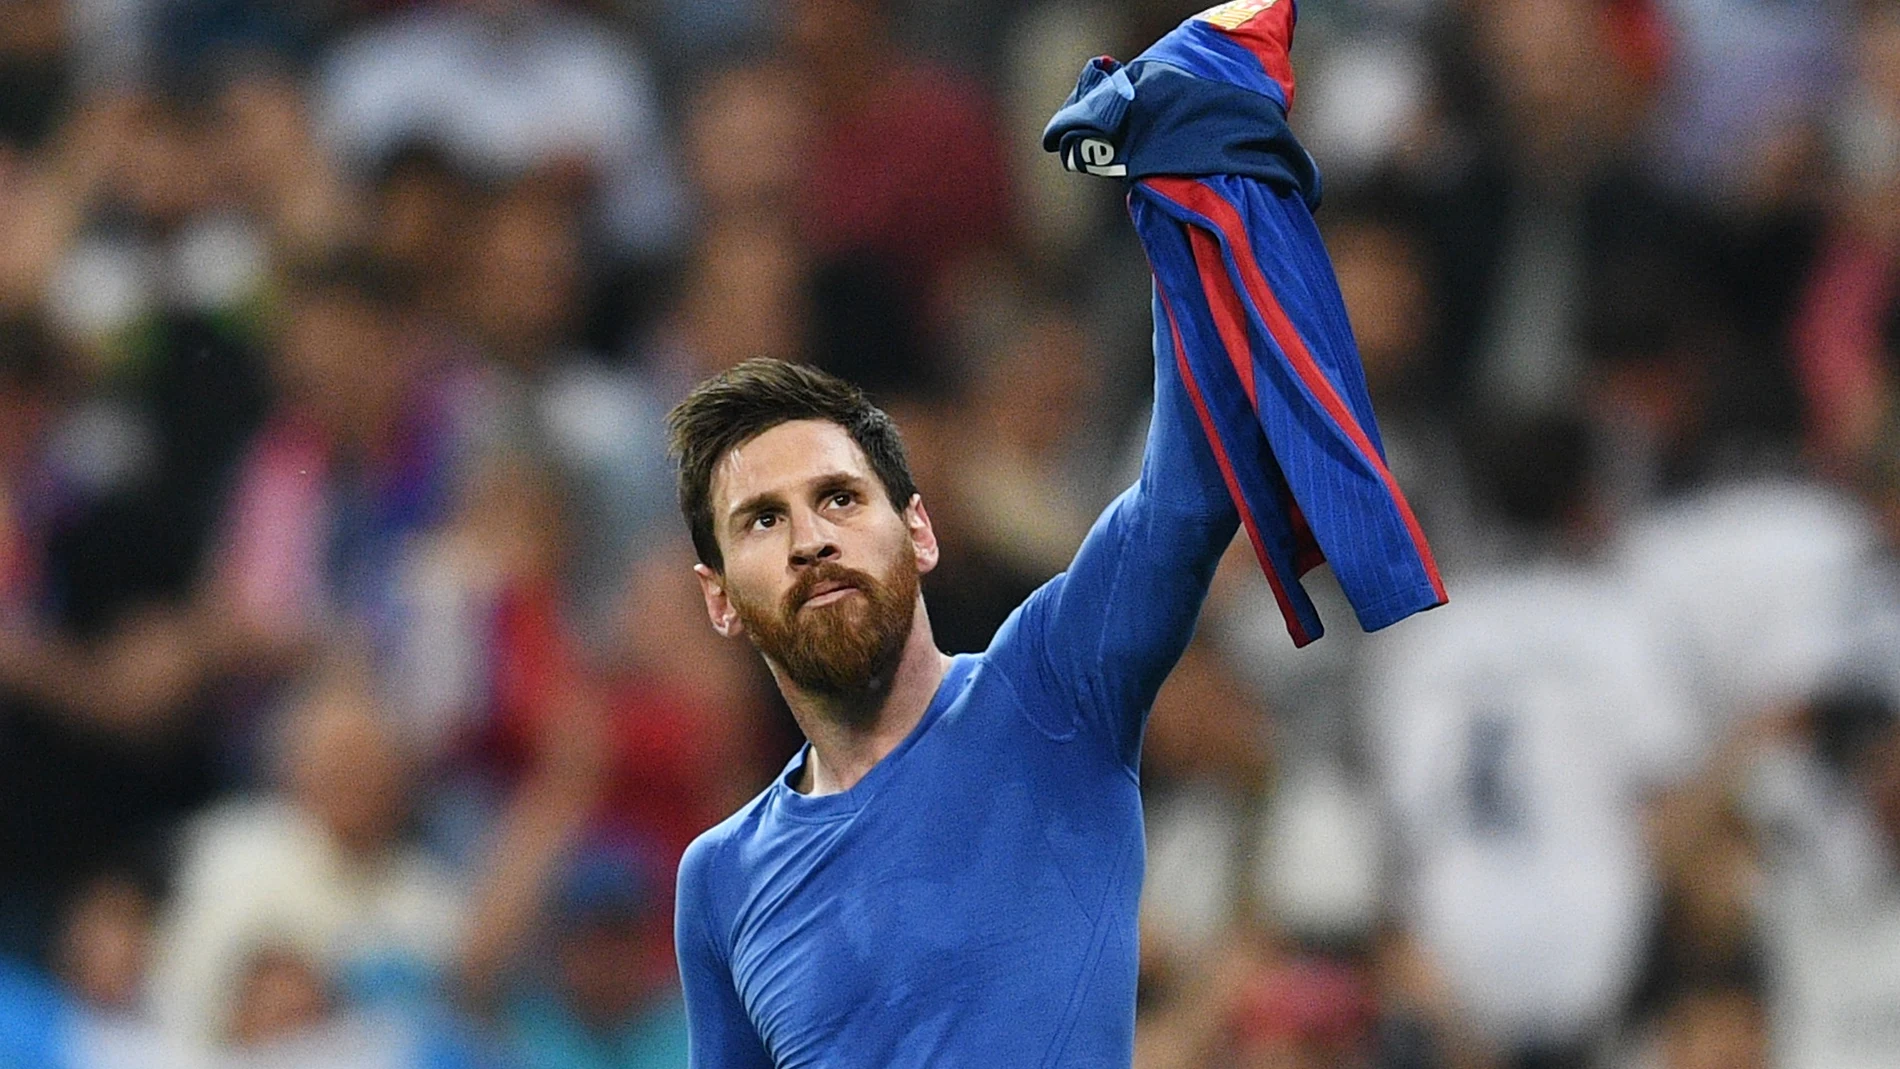 El 2-3 Messi Madrid, el gol más comentado de la Liga en Twitter